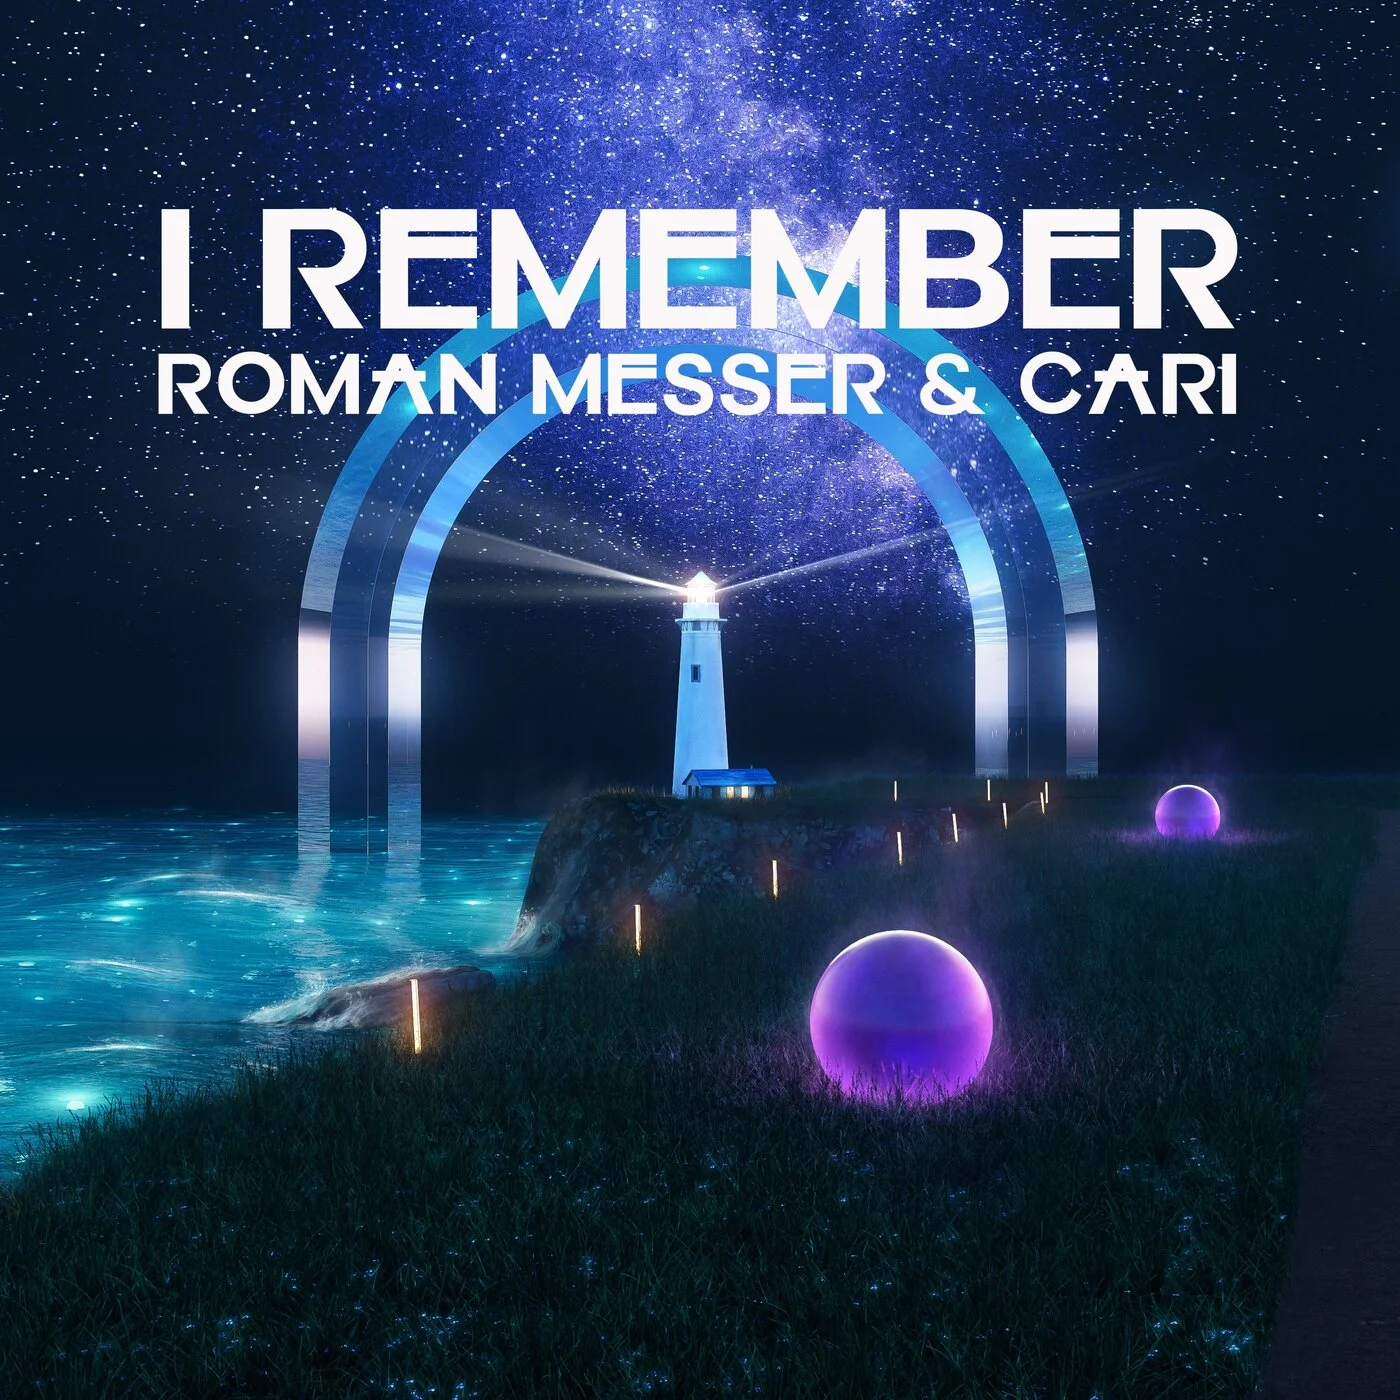 Roman Messer & Cari - I Remember (Extended Mix)